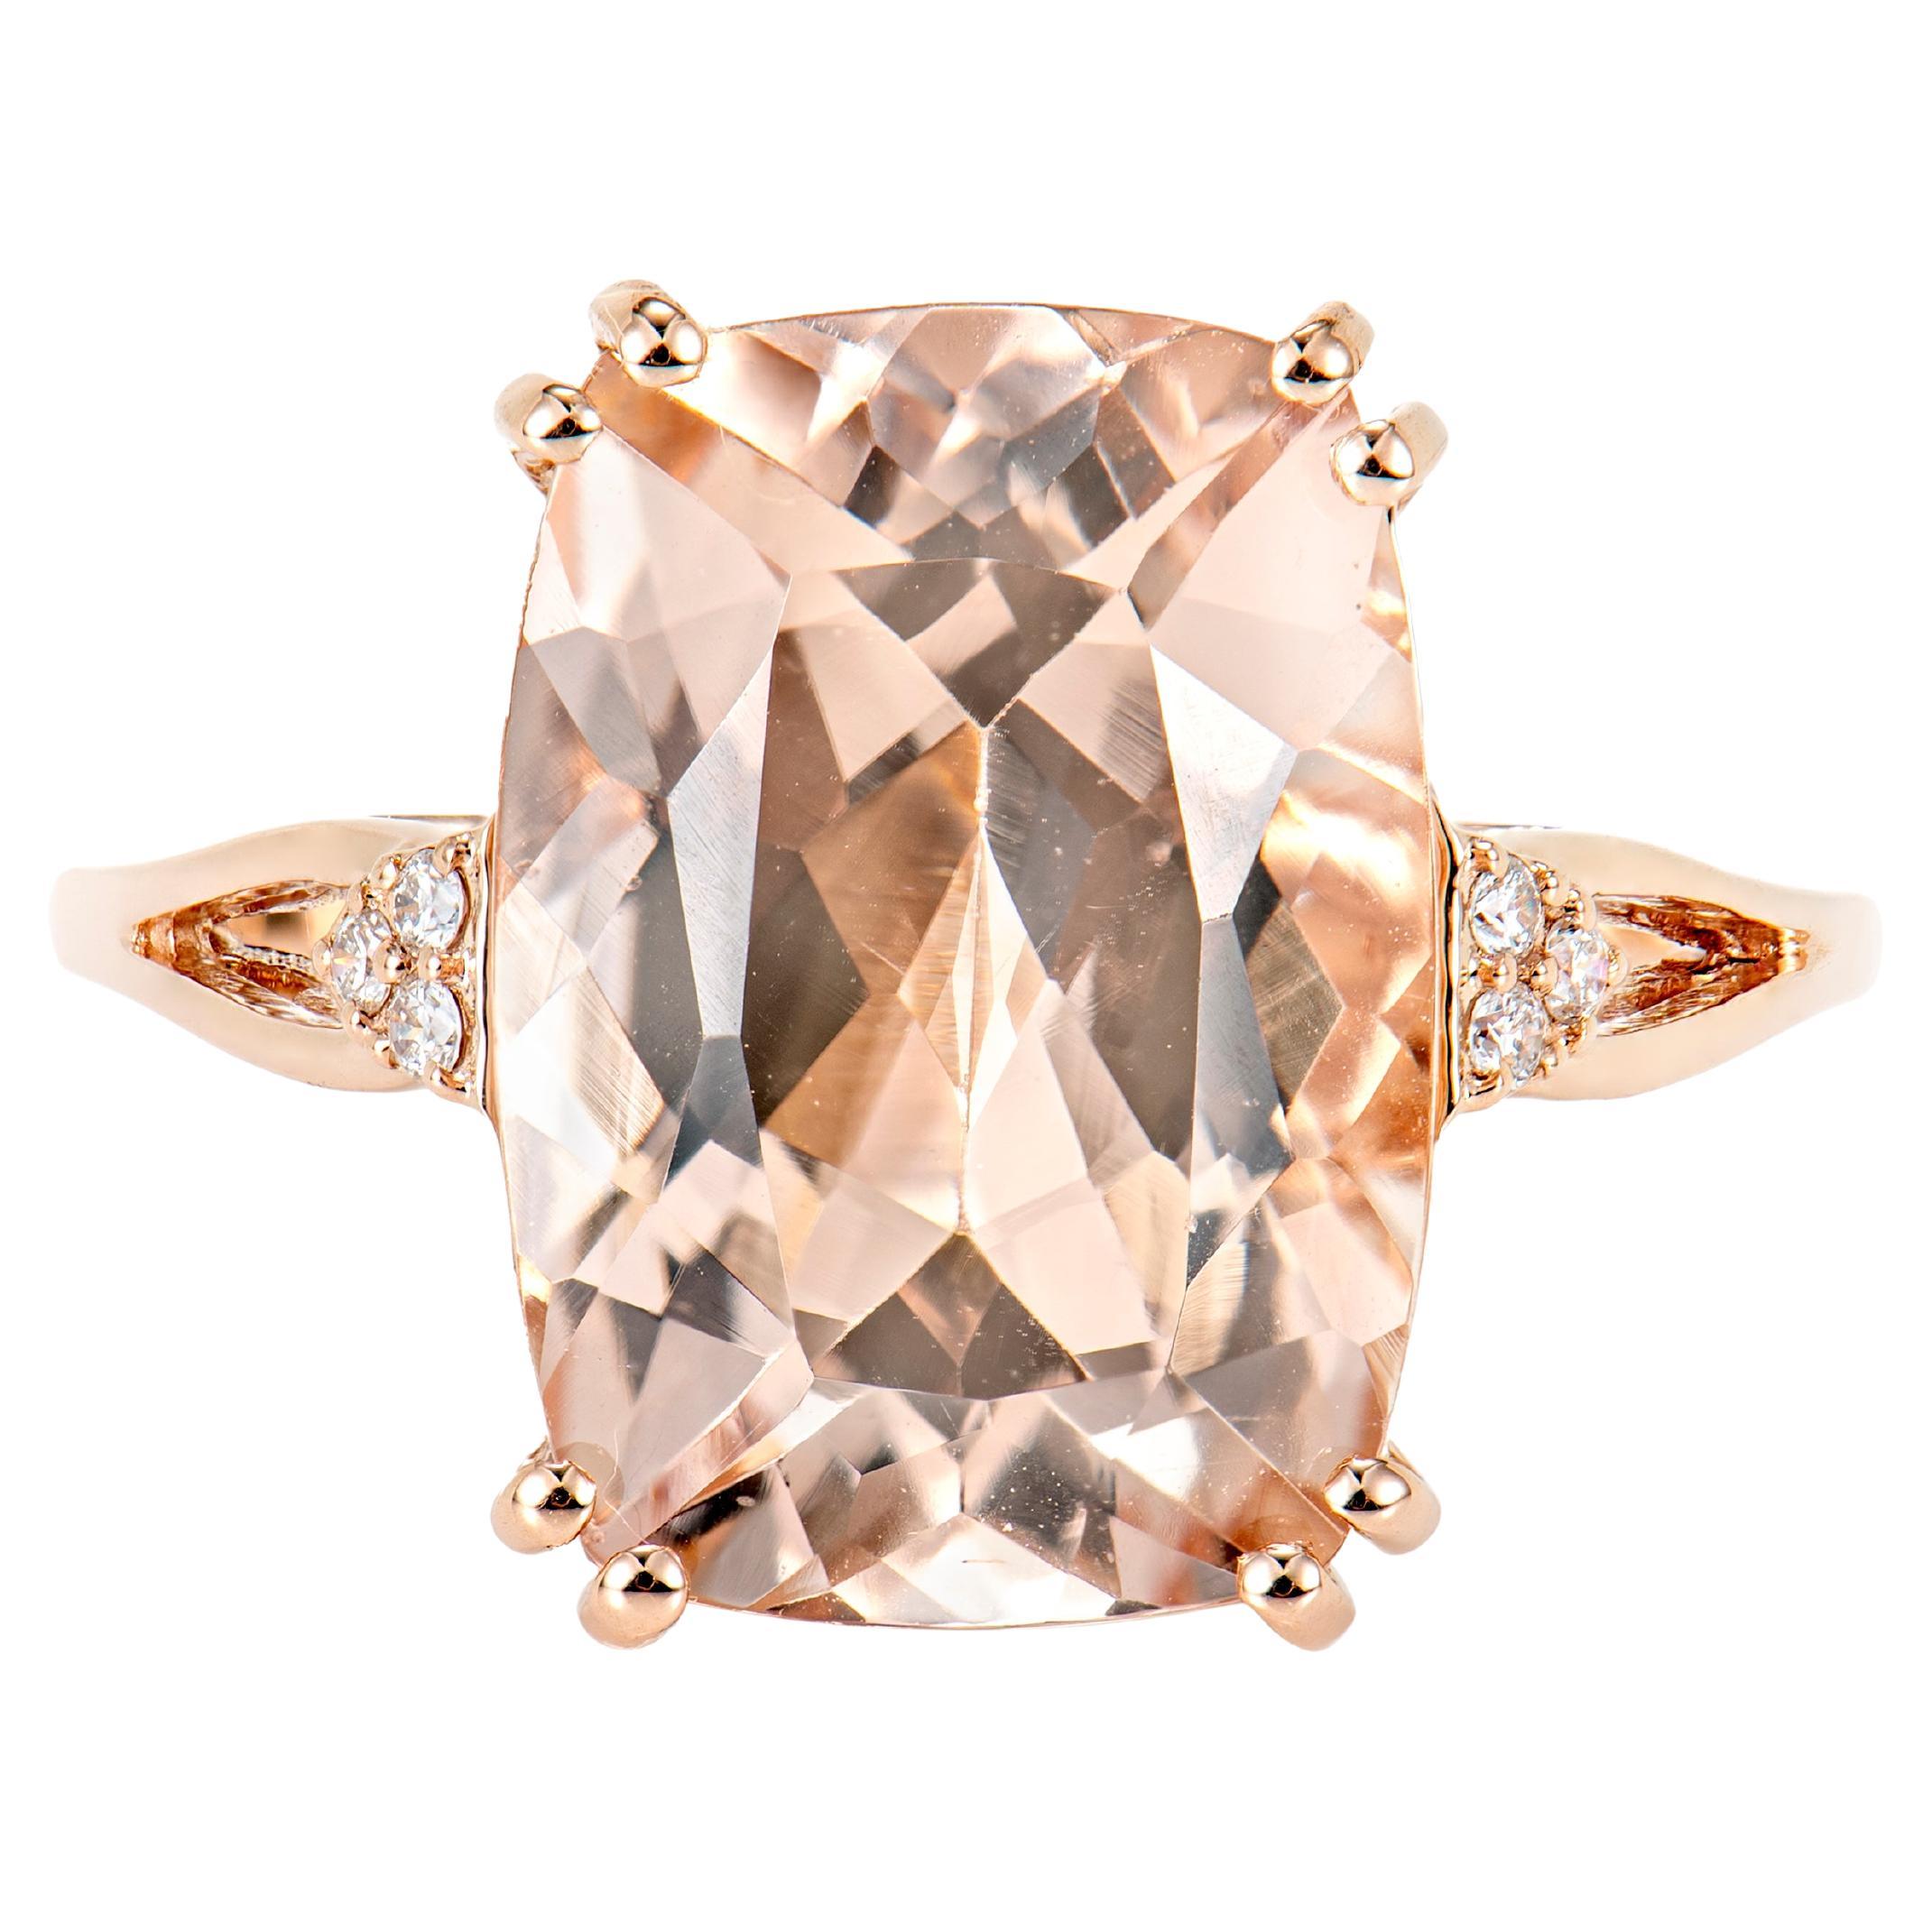 5.89 Carat Morganite Fancy Ring in 18Karat Rose Gold with White Diamond.  